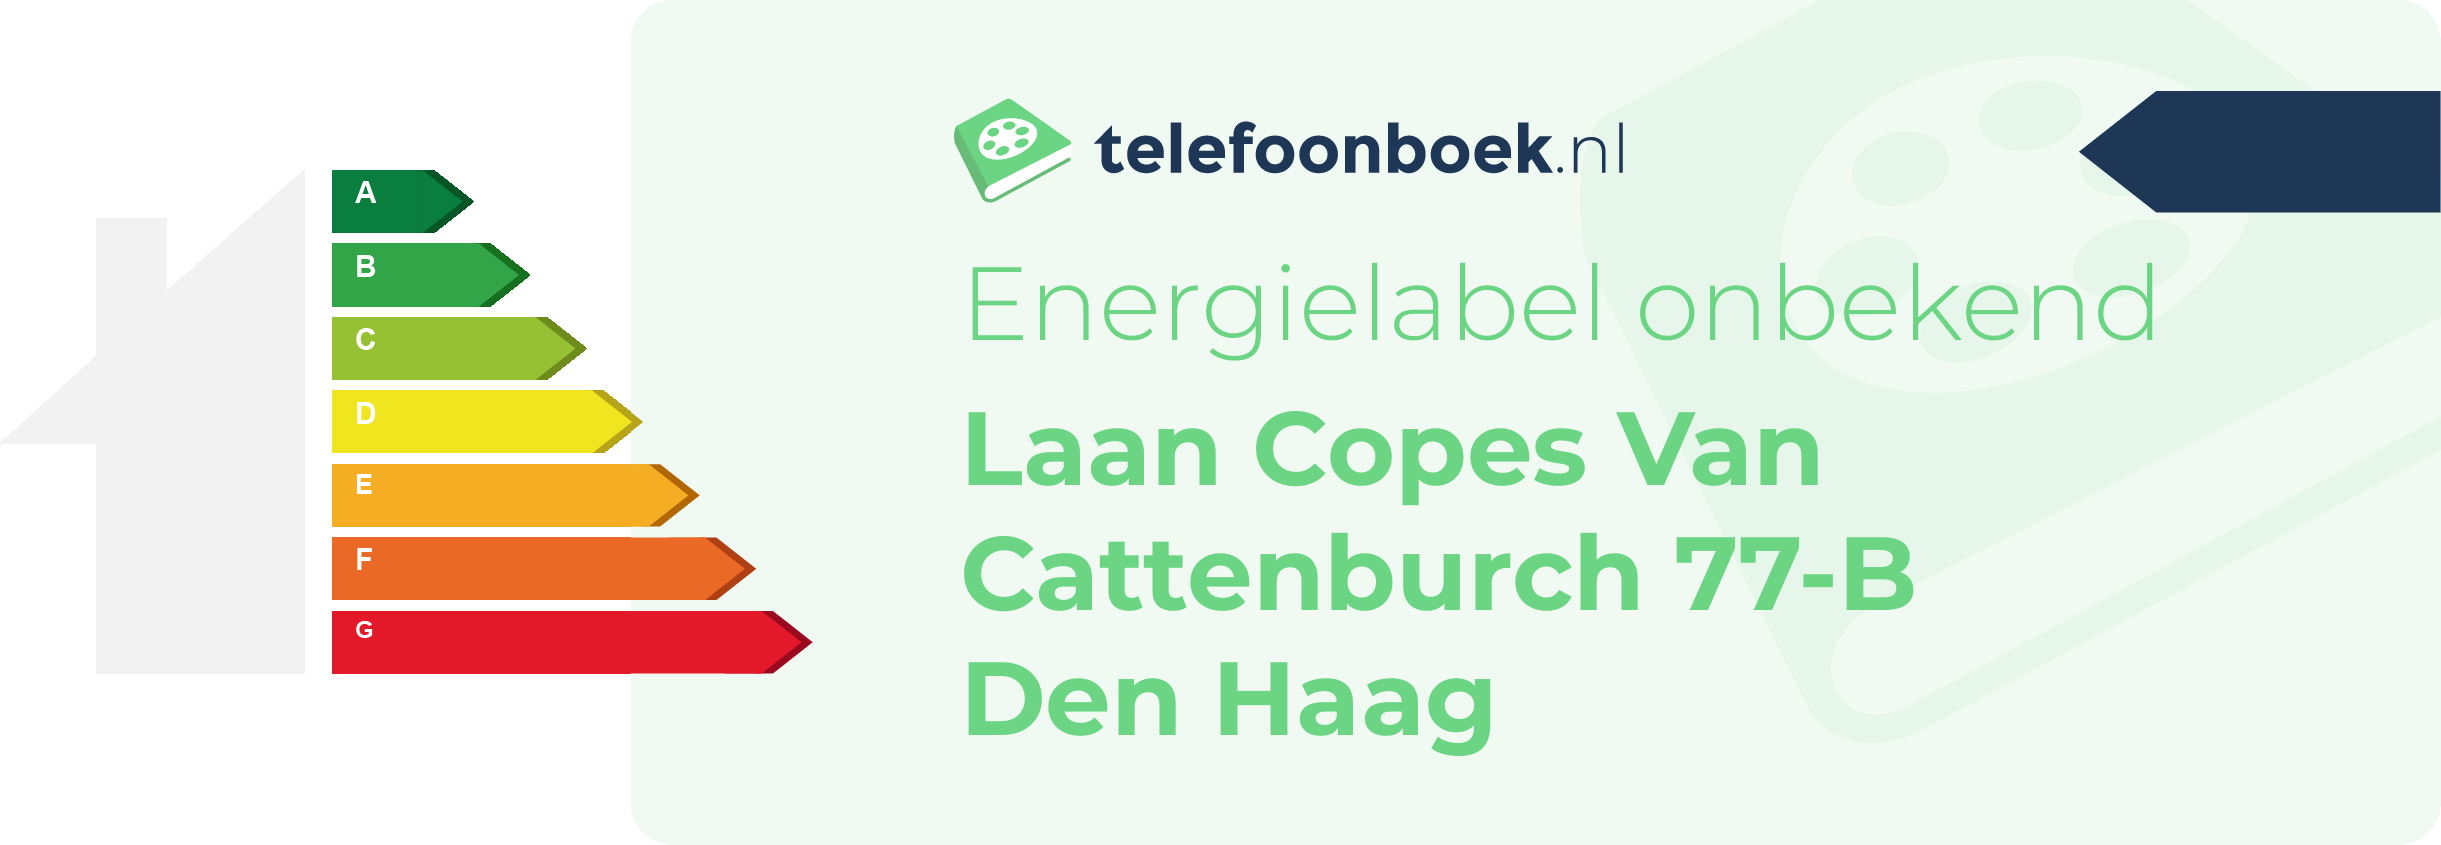 Energielabel Laan Copes Van Cattenburch 77-B Den Haag